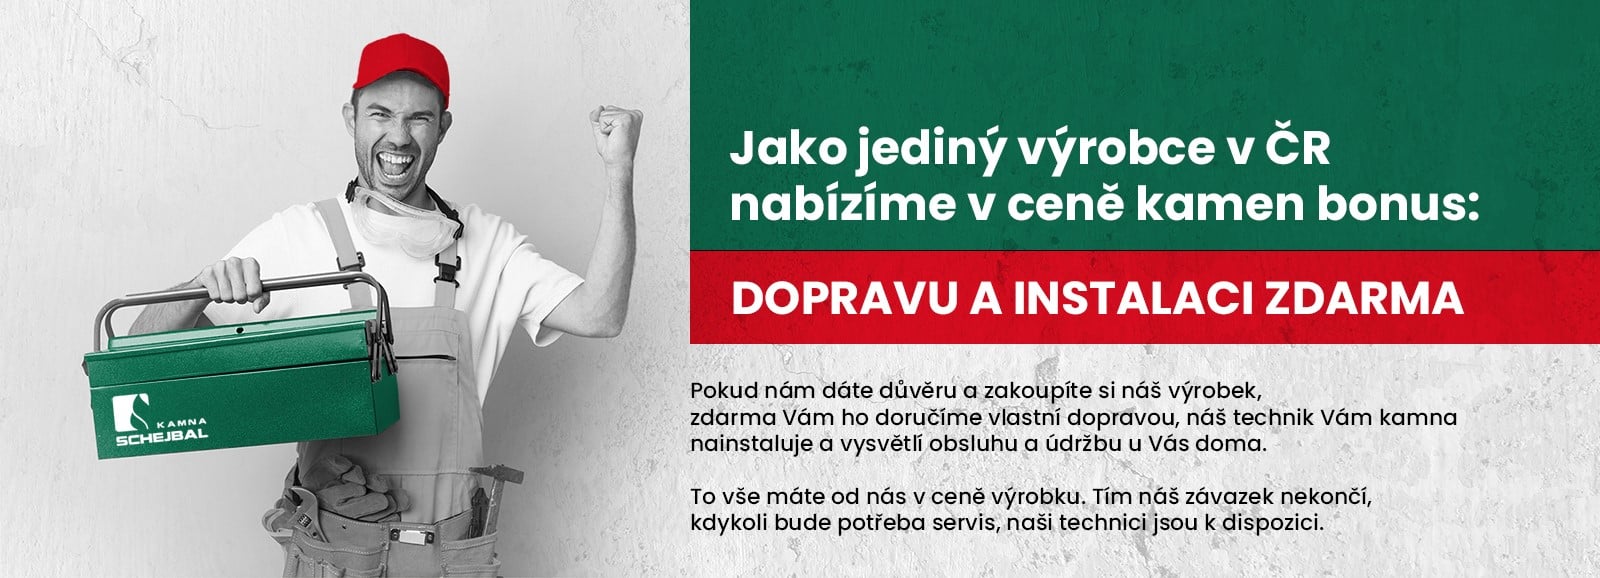 Banner: Jako jediný výrobce v ČR nabízíme v ceně kamen bonus: dopravu a instalaci zdarma